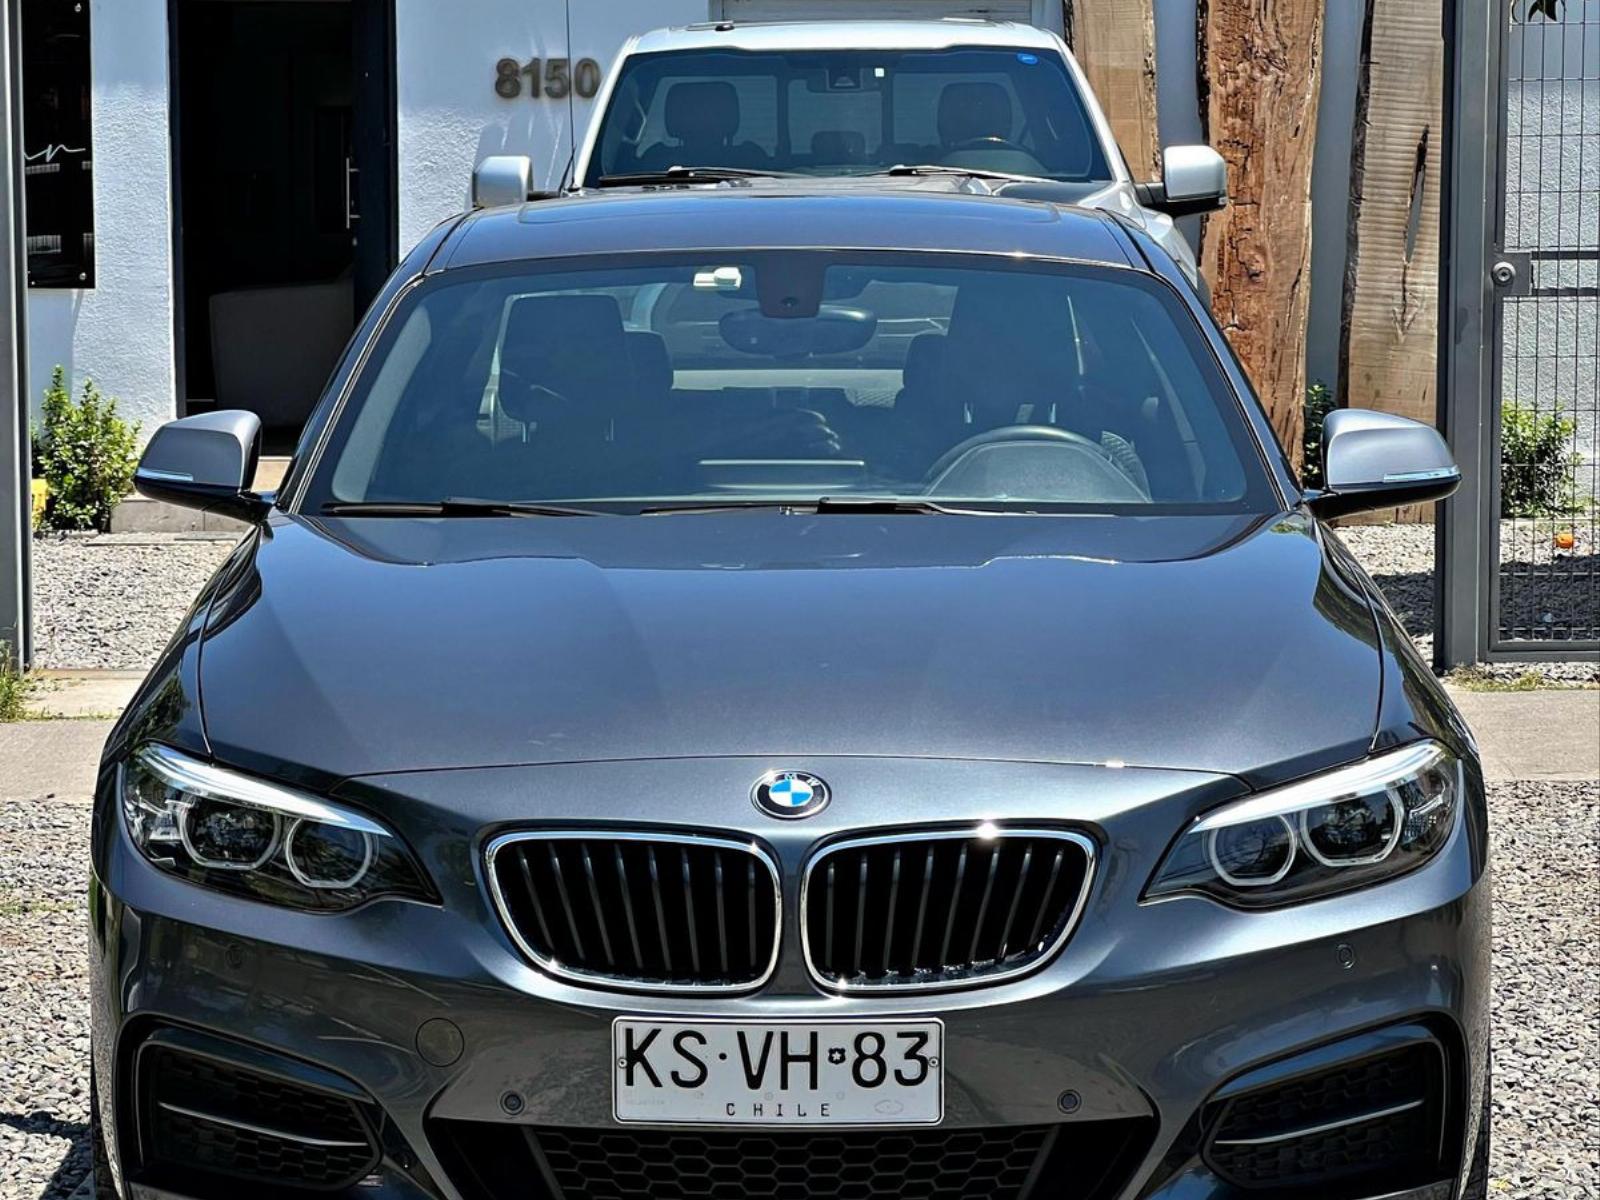 BMW 240M COUPE LCI 3.0 AUT  2019 3.0 - 